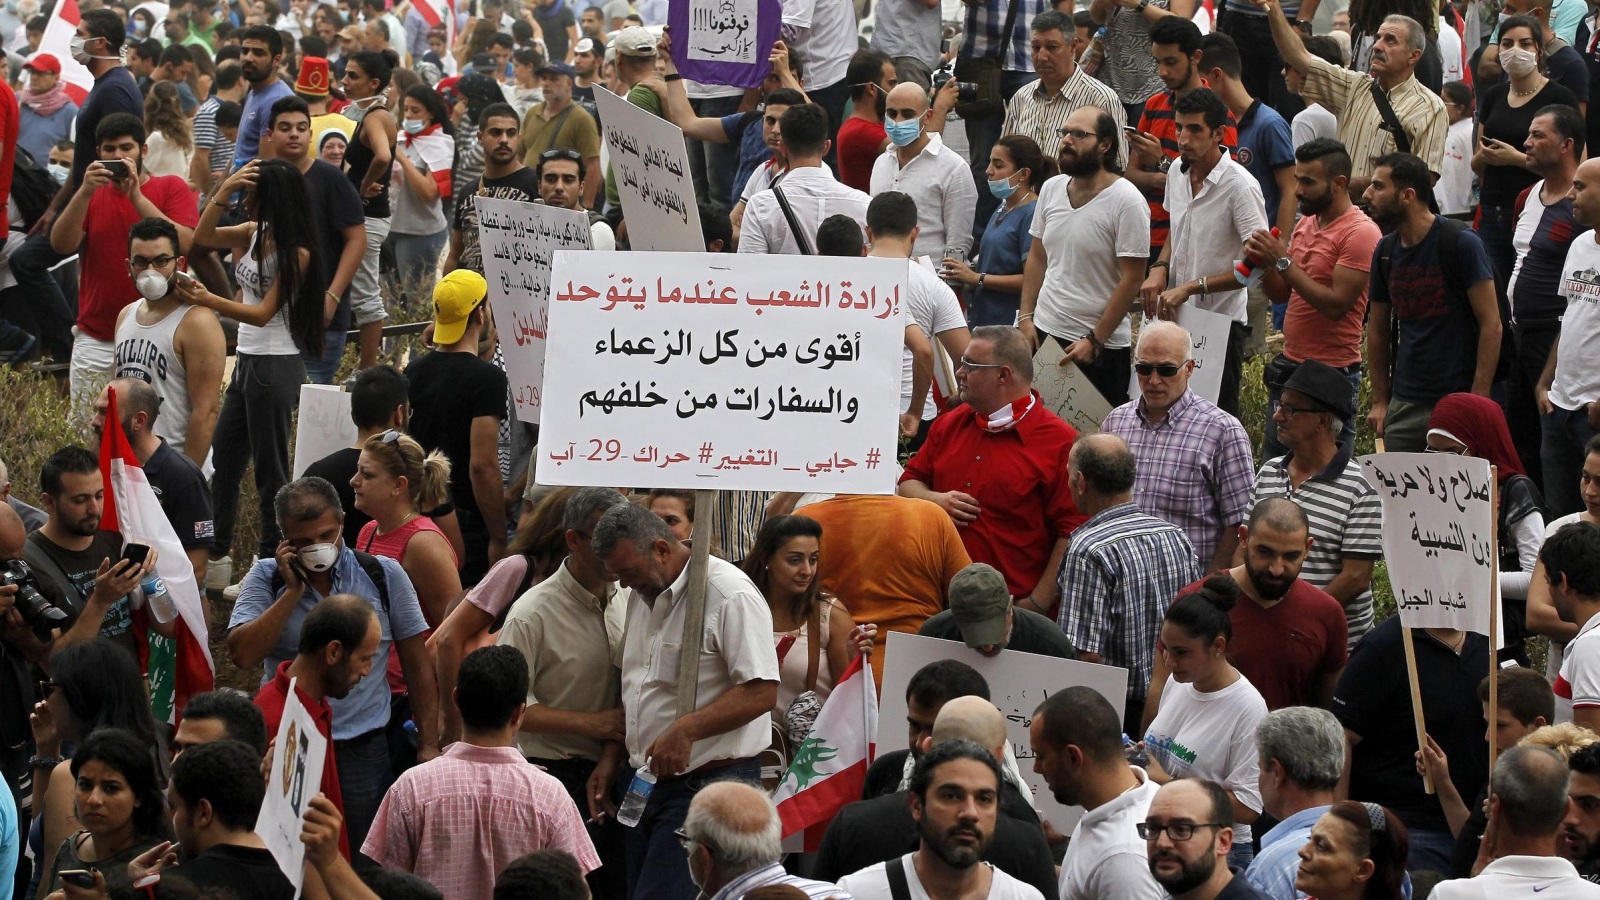 ‪مظاهرات الأربعاء في بيروت امتداد للاحتجاجات على تراكم النفايات منذ يوليو/تموز الماضي‬ (الأوروبية)